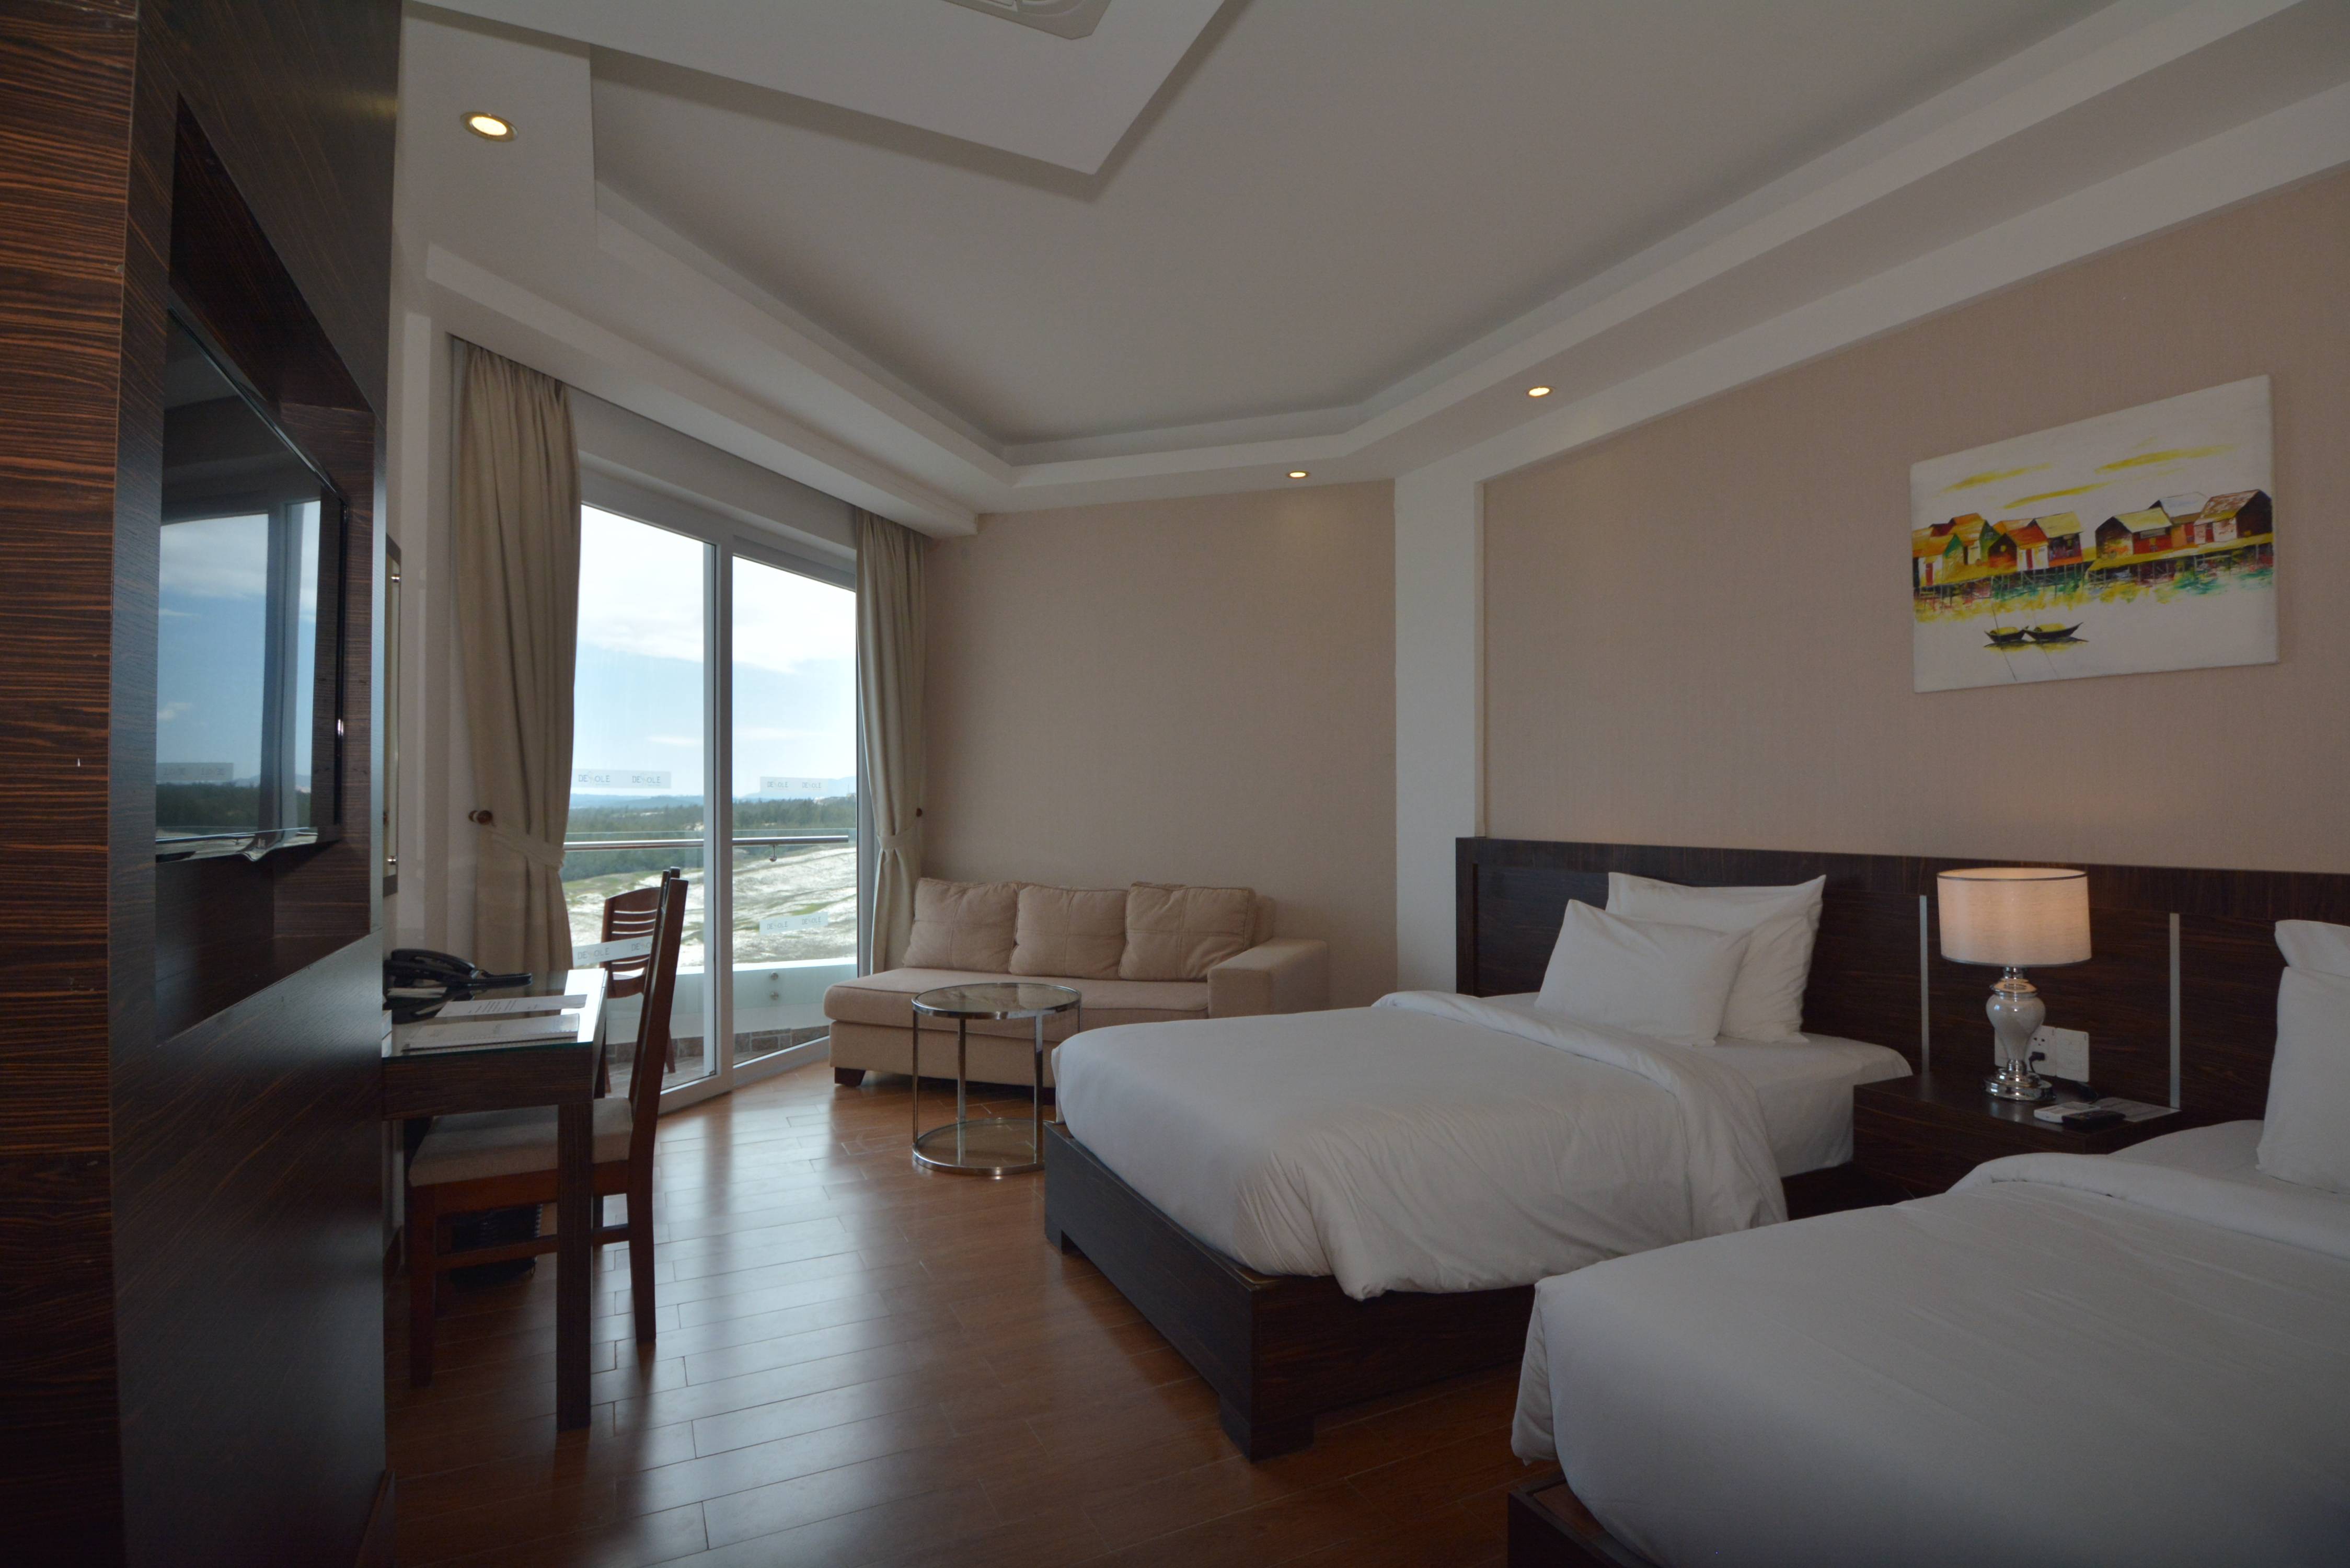 Dessole sea lion beach resort & spa
 в муйне (вьетнам) / отели, гостиницы и хостелы / мой путеводитель